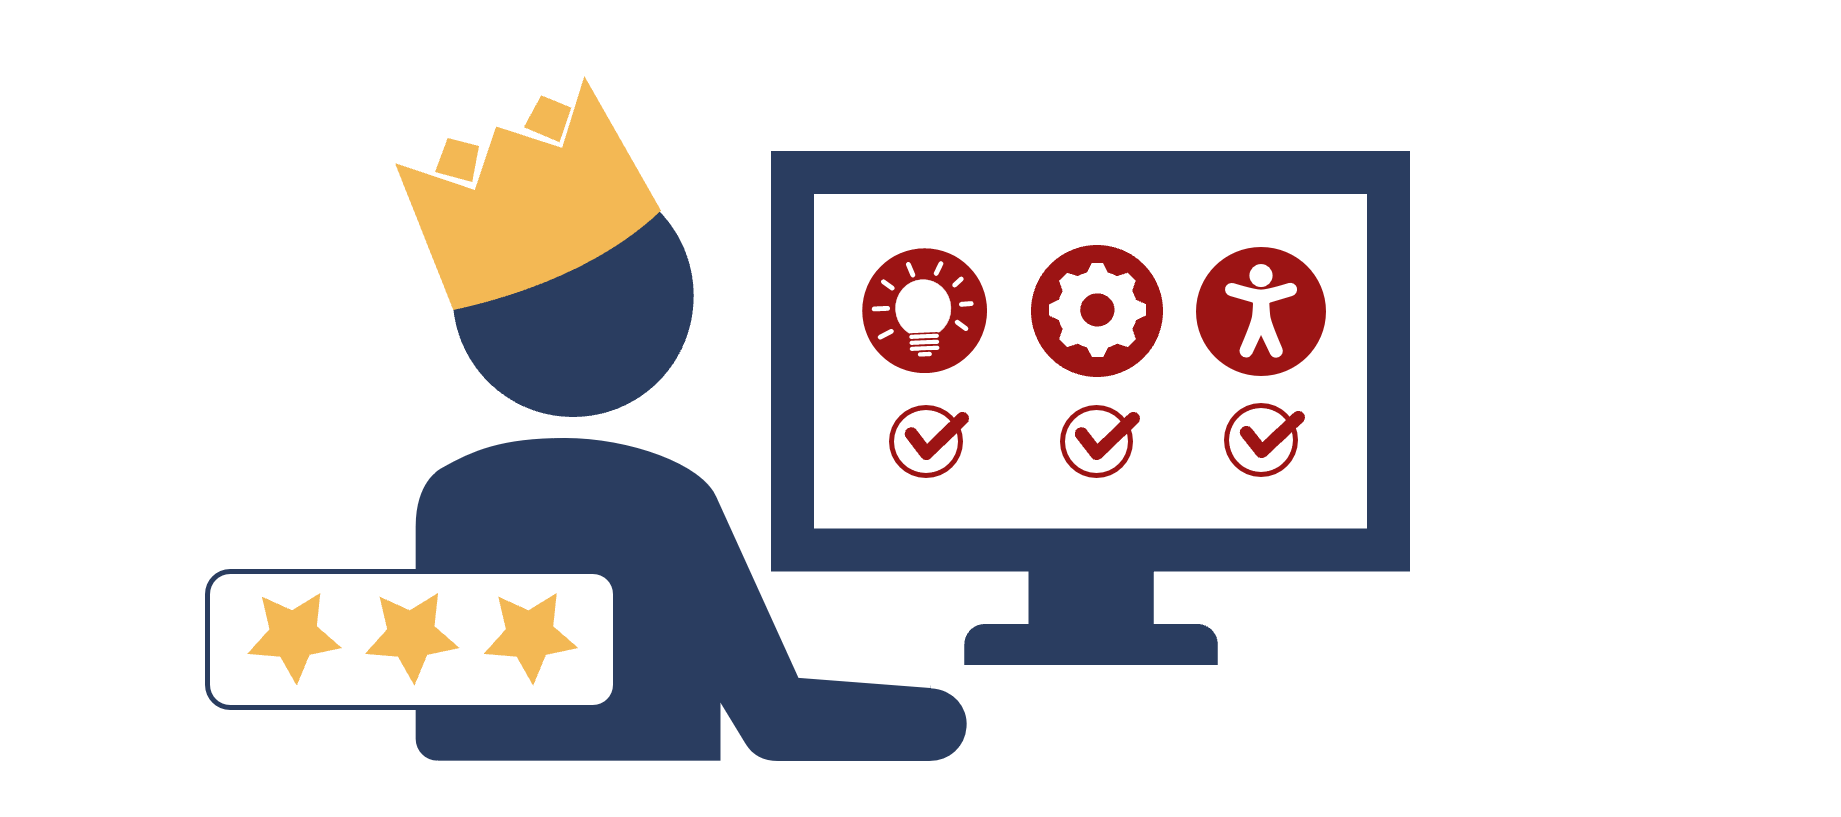 Grafik einer Person vor einem Computerbildschirm, auf dem drei Icons mit einem Haken versehen sind: eine Glühbirne, ein Zahnrad und ein Zeichen für Zugänglichkeit. Die Person hat eine Krone auf dem Kopf und ist mit drei Sternen "ausgezeichnet".